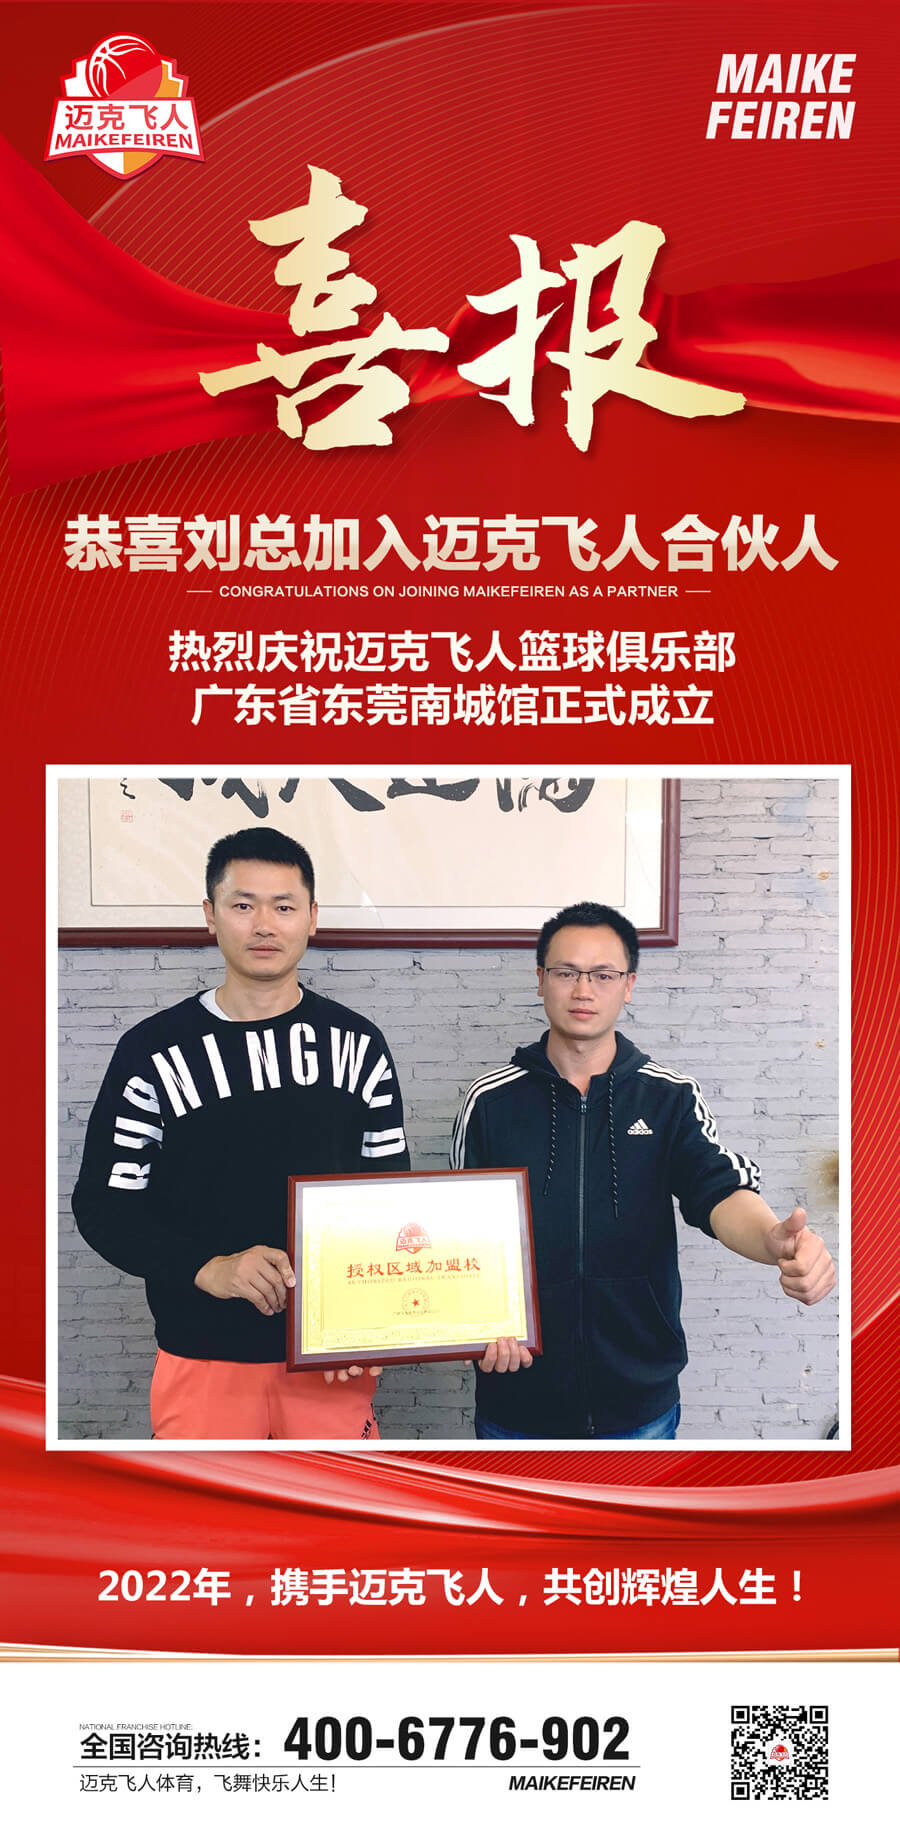 篮球加盟喜报：迈克飞人篮球俱乐部广东东莞南城区馆正式成立